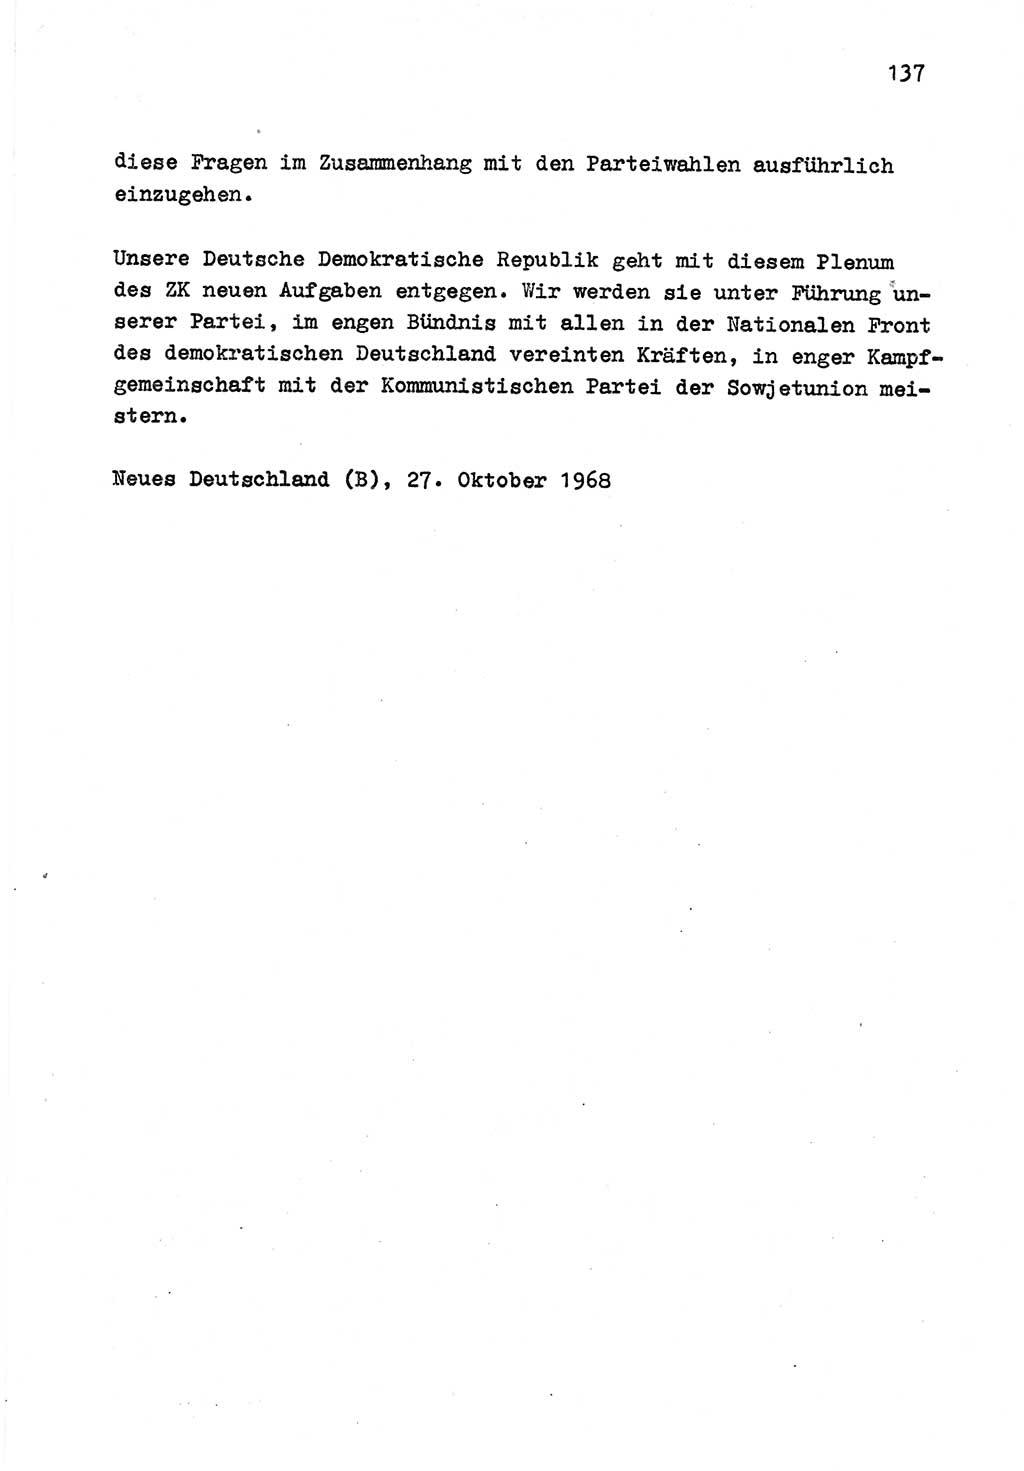 Zu Fragen der Parteiarbeit [Sozialistische Einheitspartei Deutschlands (SED) Deutsche Demokratische Republik (DDR)] 1979, Seite 137 (Fr. PA SED DDR 1979, S. 137)